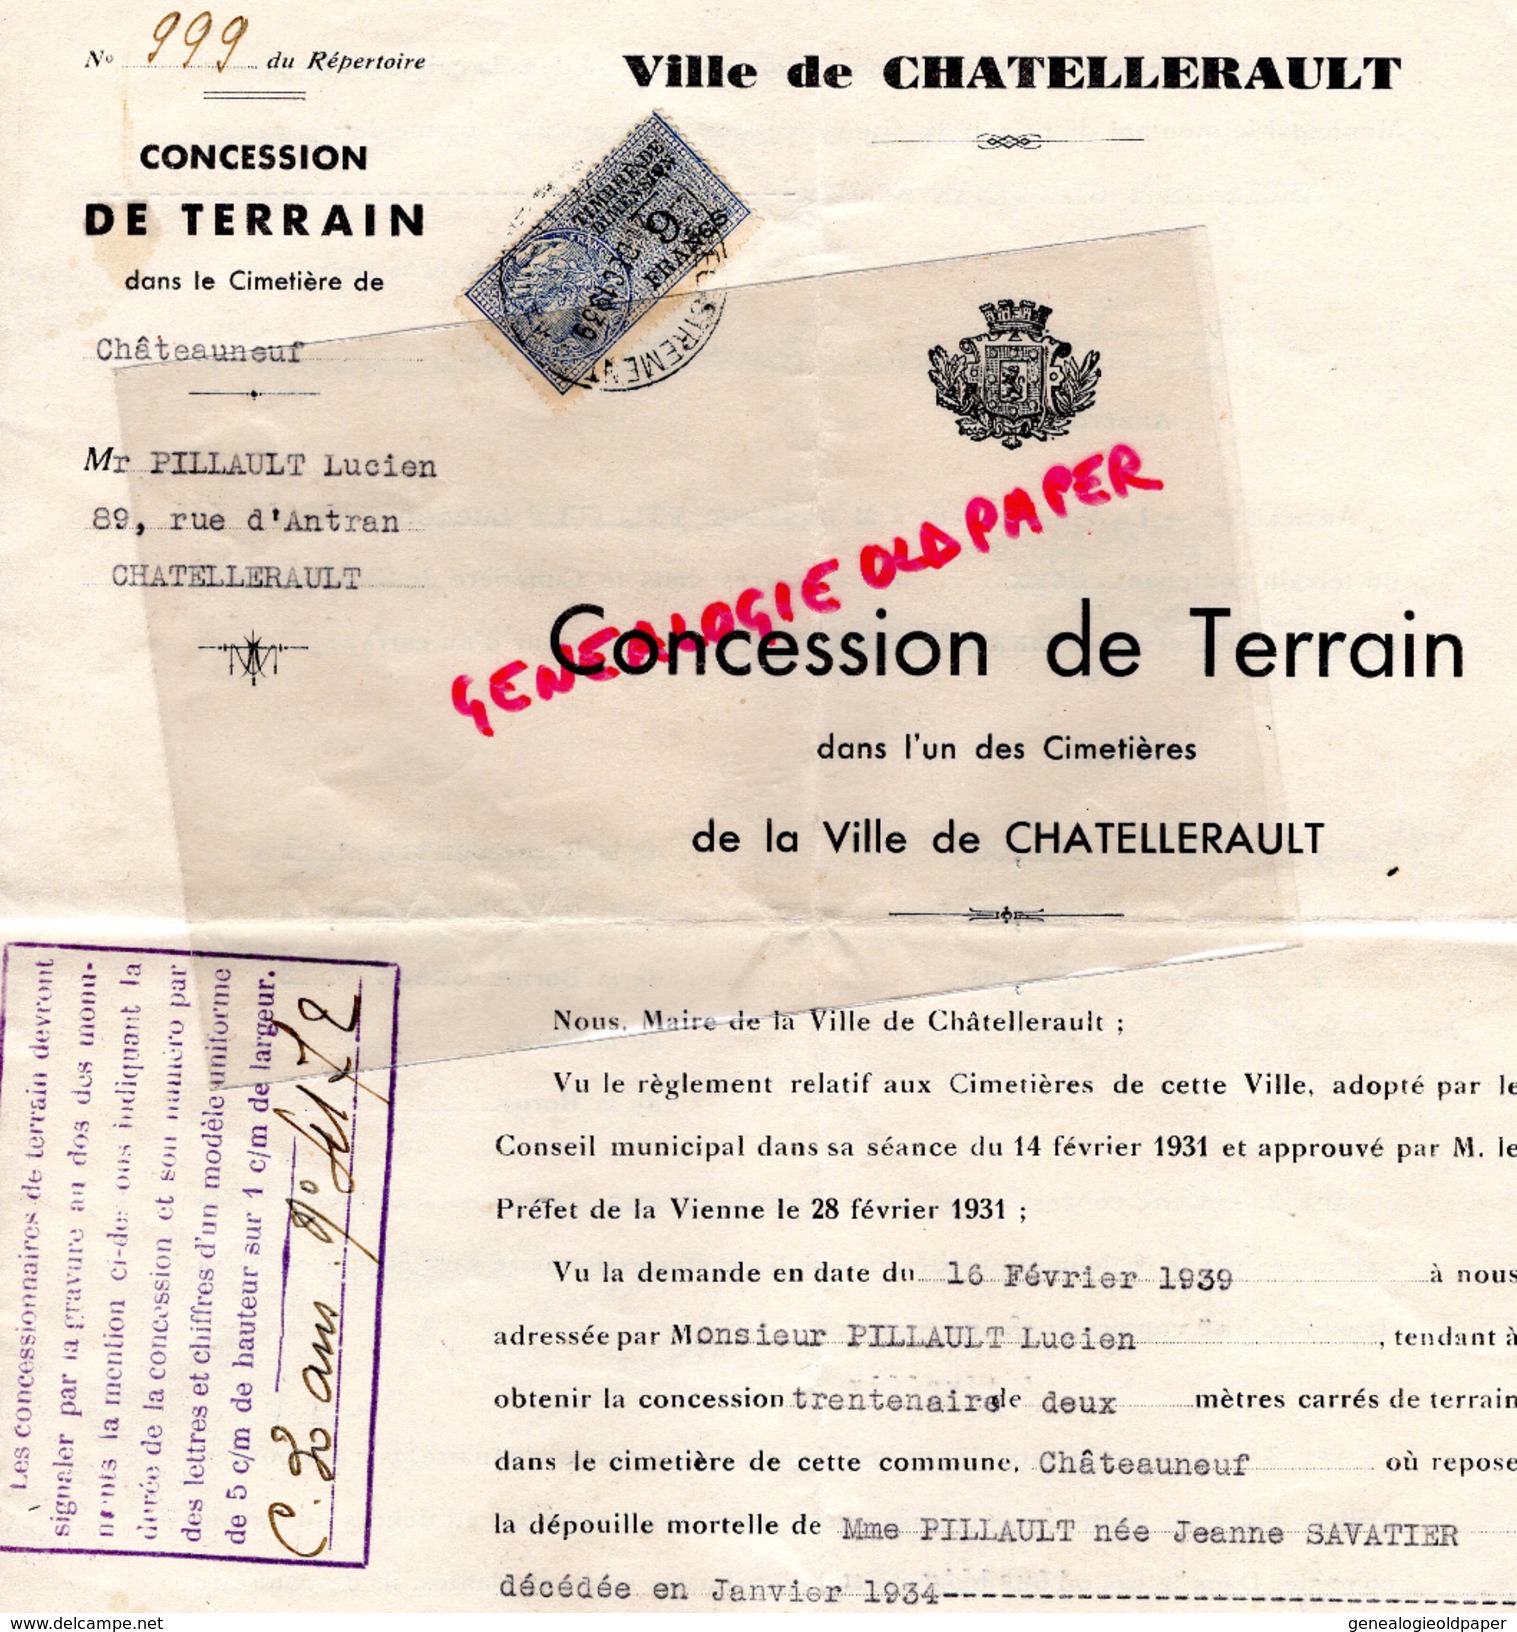 86- CHATELLERAULT- CONCESSION DE TERRAIN CIMETIERE CHATEAUNEUF- LUCIEN PILLAULT- JEANNE SAVATIER 1939 - Historical Documents